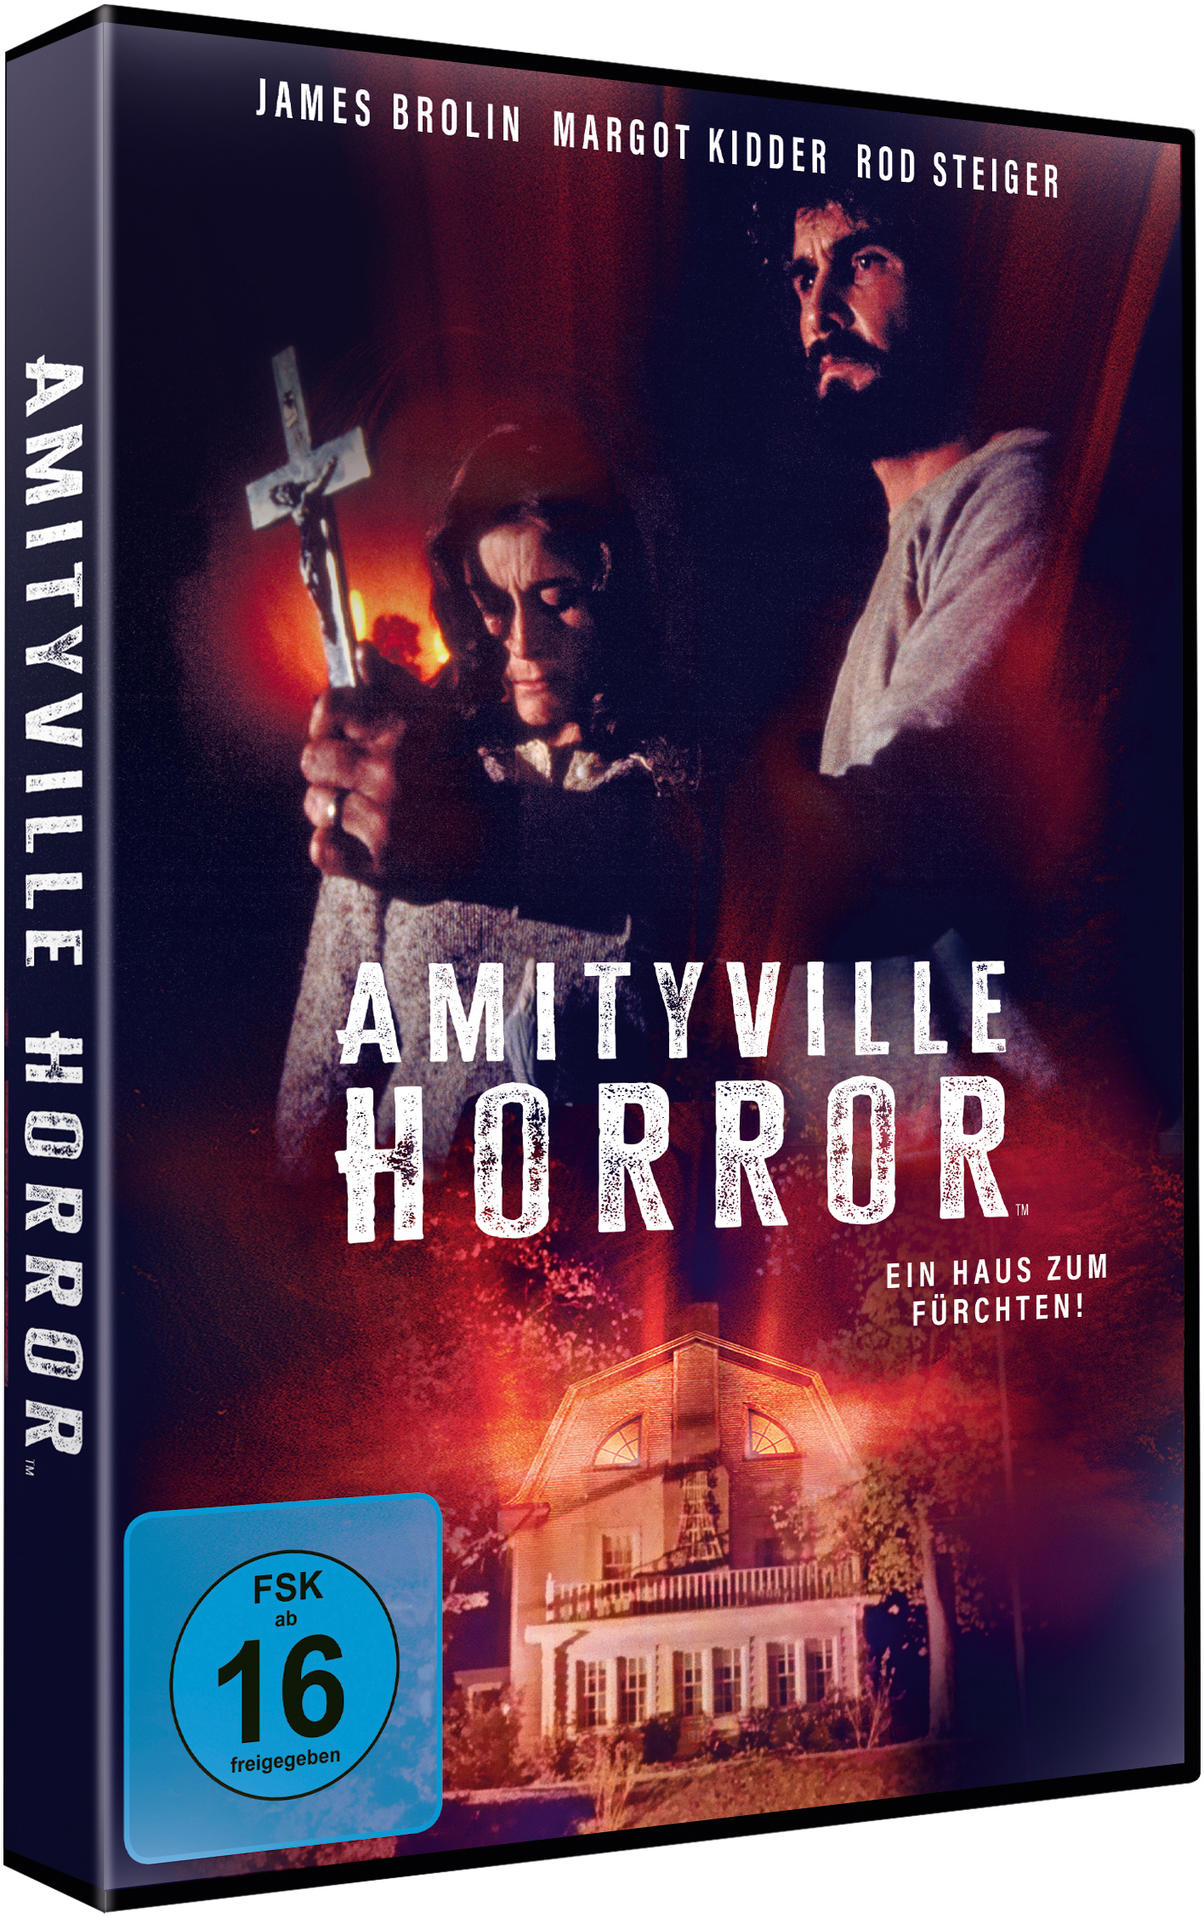 zum Fürchten! Haus Ein Amityville - Horror DVD